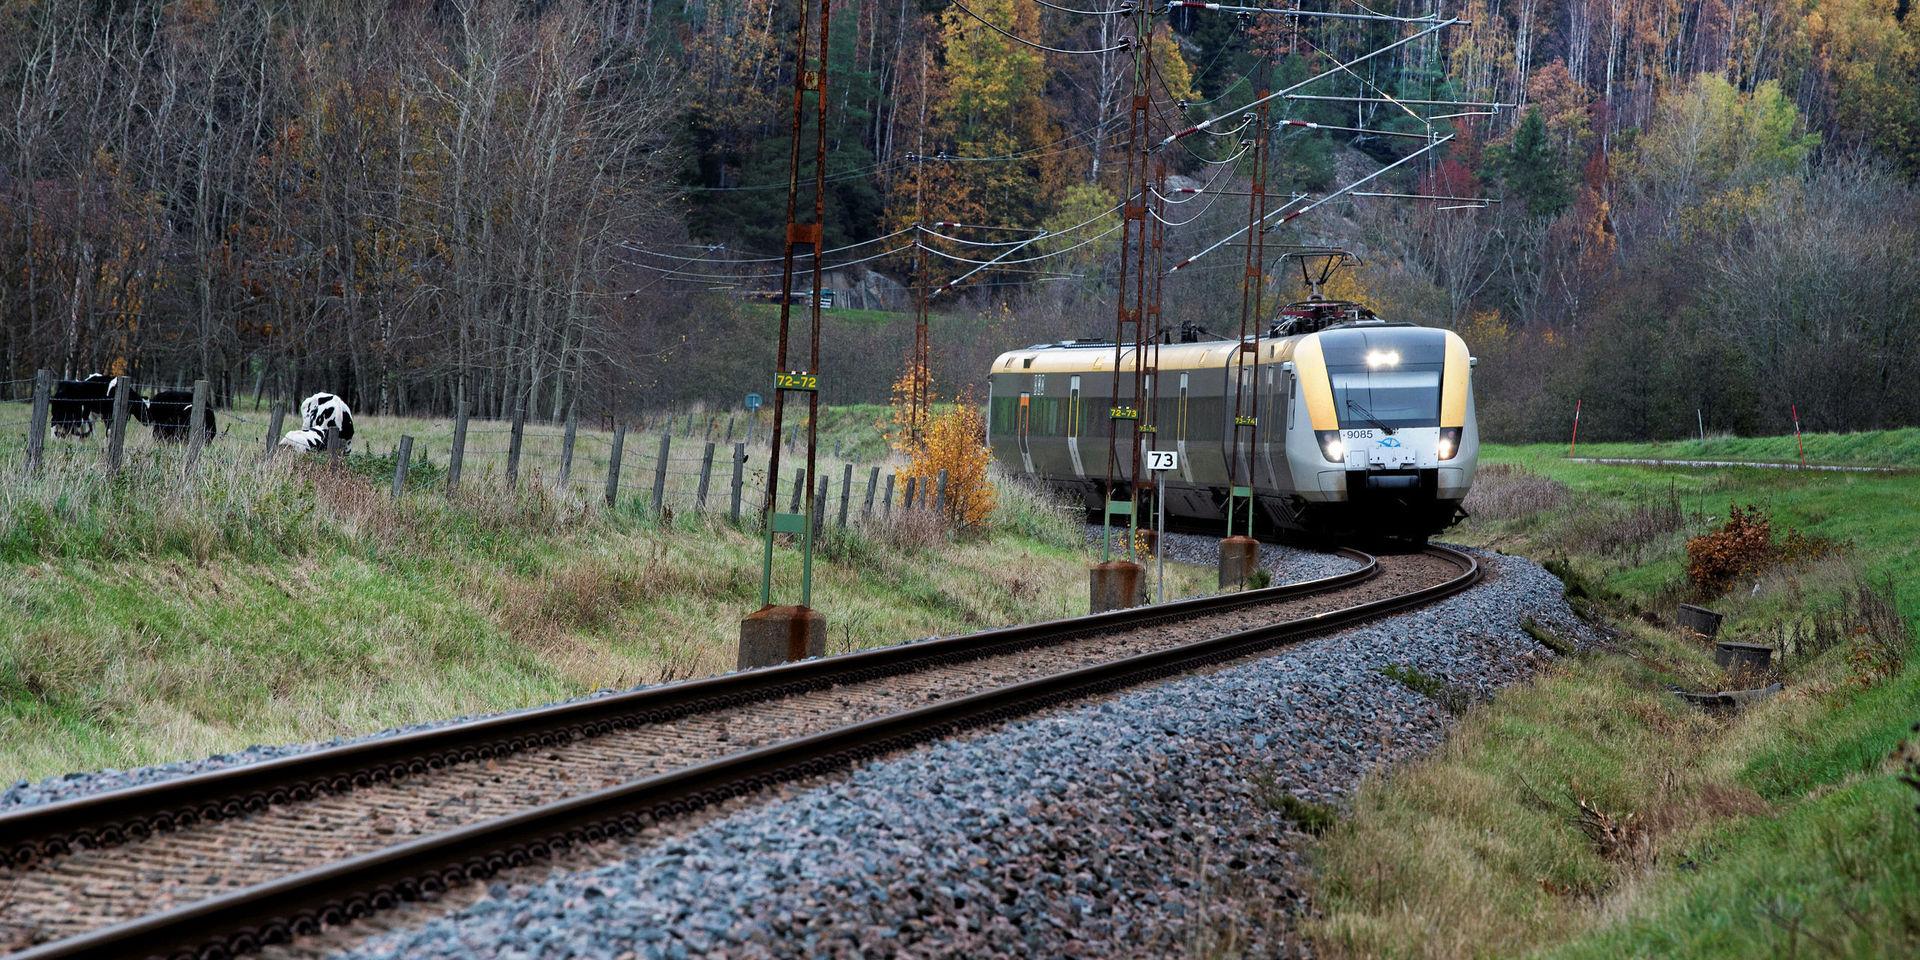 Alldeles oavsett skyhöga kostnader och negativ miljöpåverkan så finns det inget passagerarunderlag för en höghastighetsbana mellan Oslo och Köpenhamn via Göteborg. Glöm detta projekt, skriver debattören.